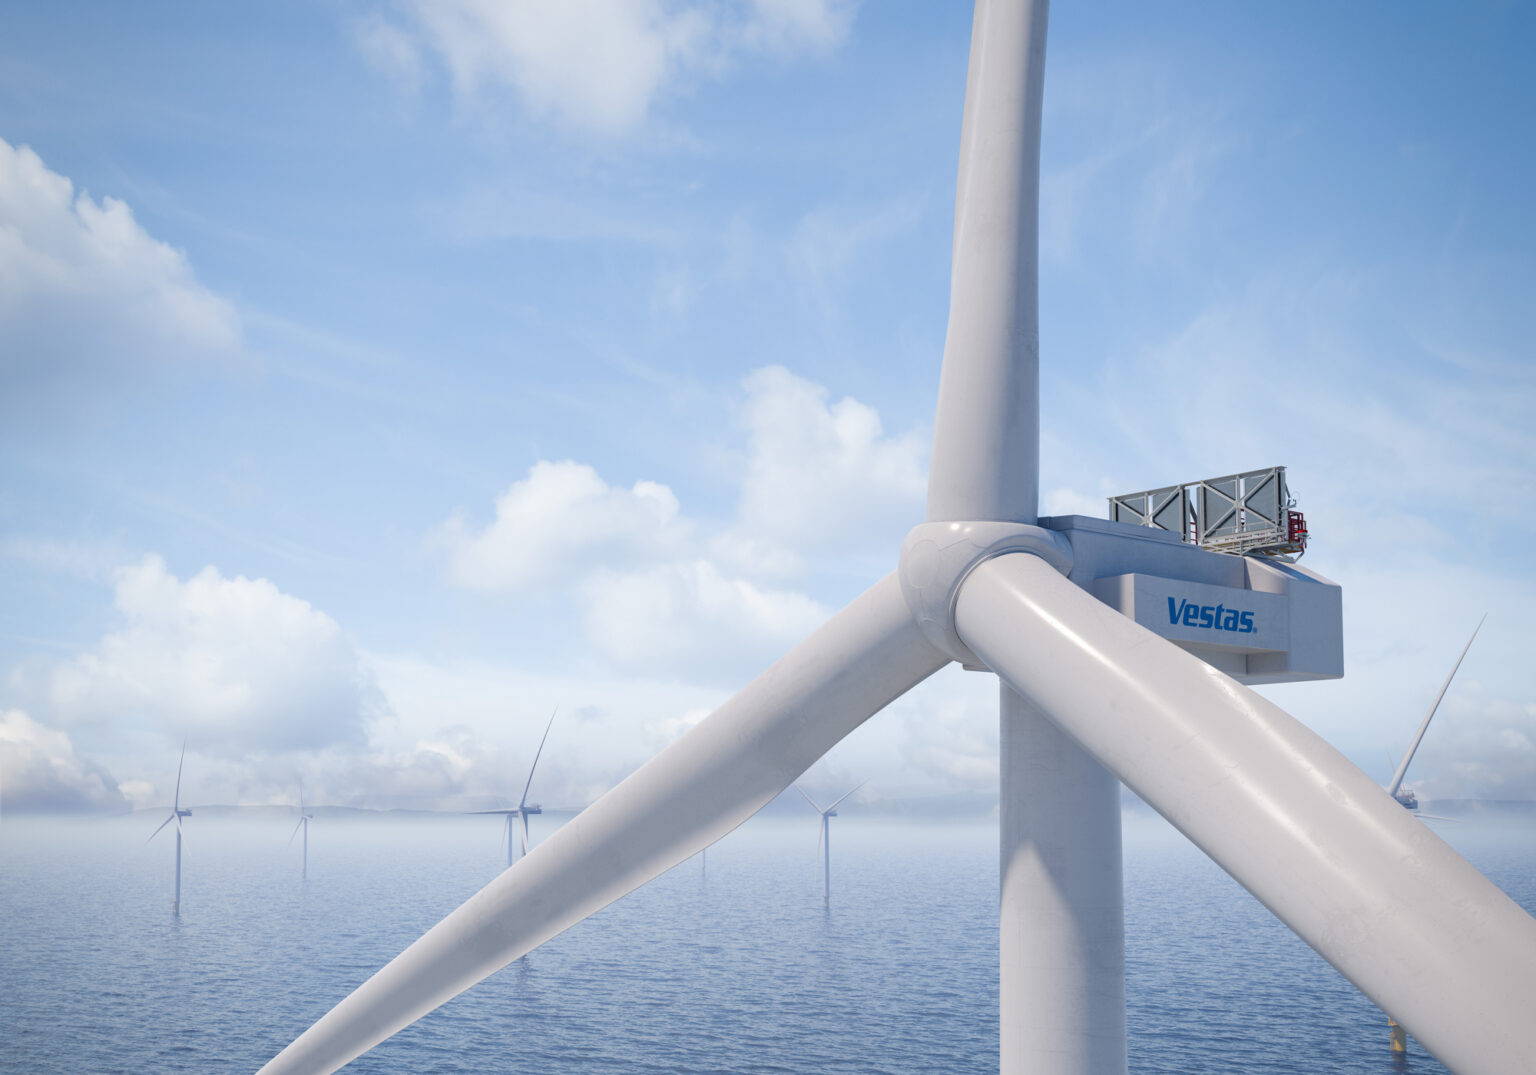 Presentes en las turbinas eólicas más potentes del mundo - Timken